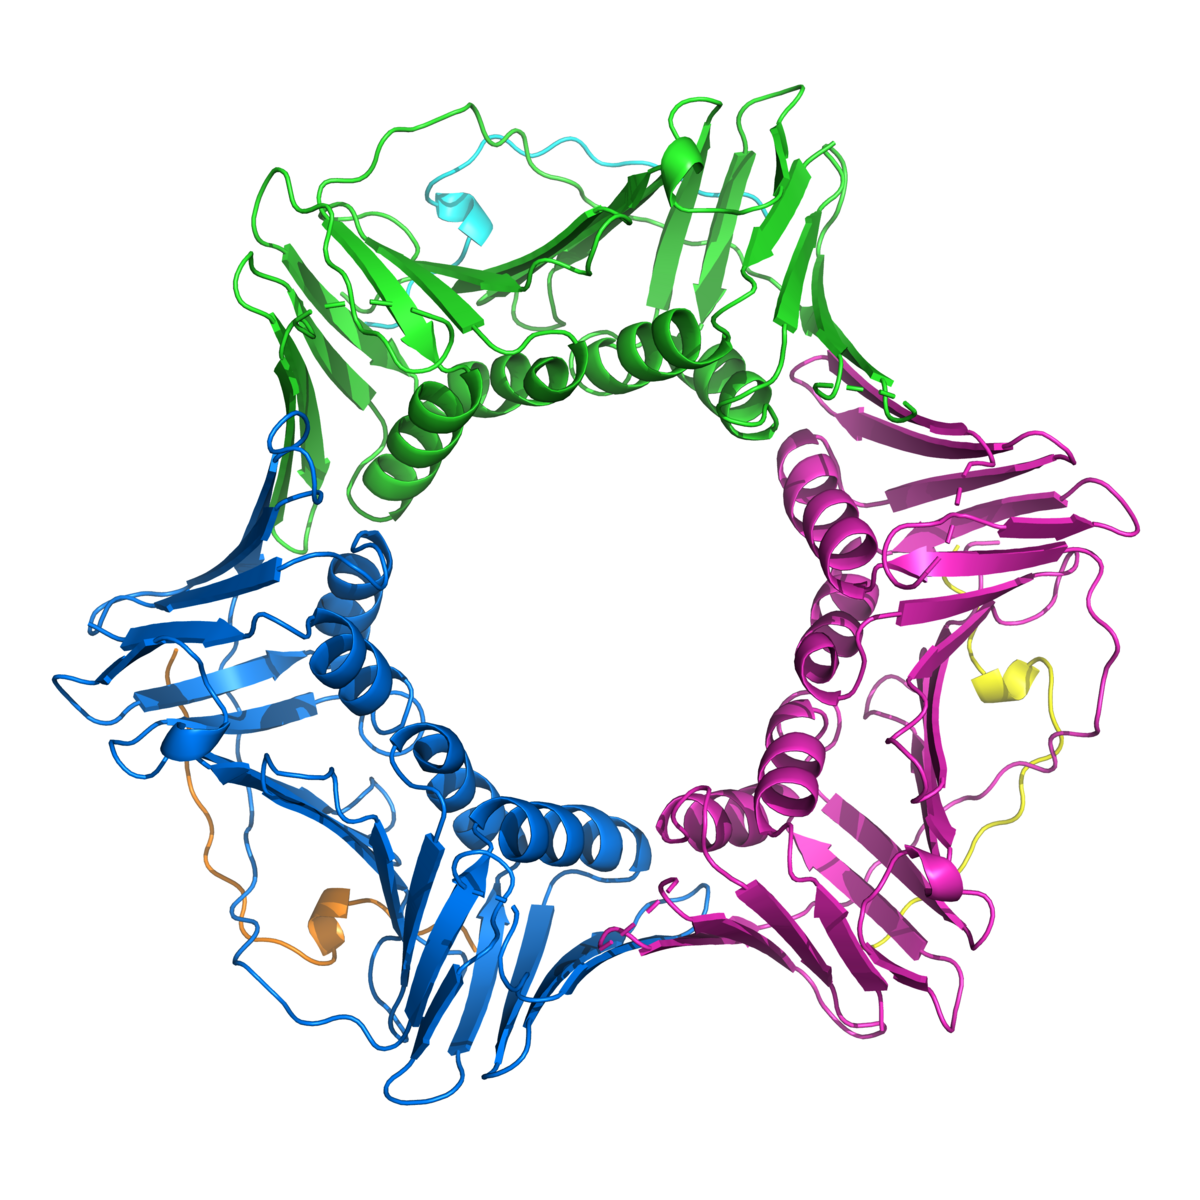 PCNA ist ein sternförmiges Protein, das FAN1 bei der DNA-Reparatur hilft.  